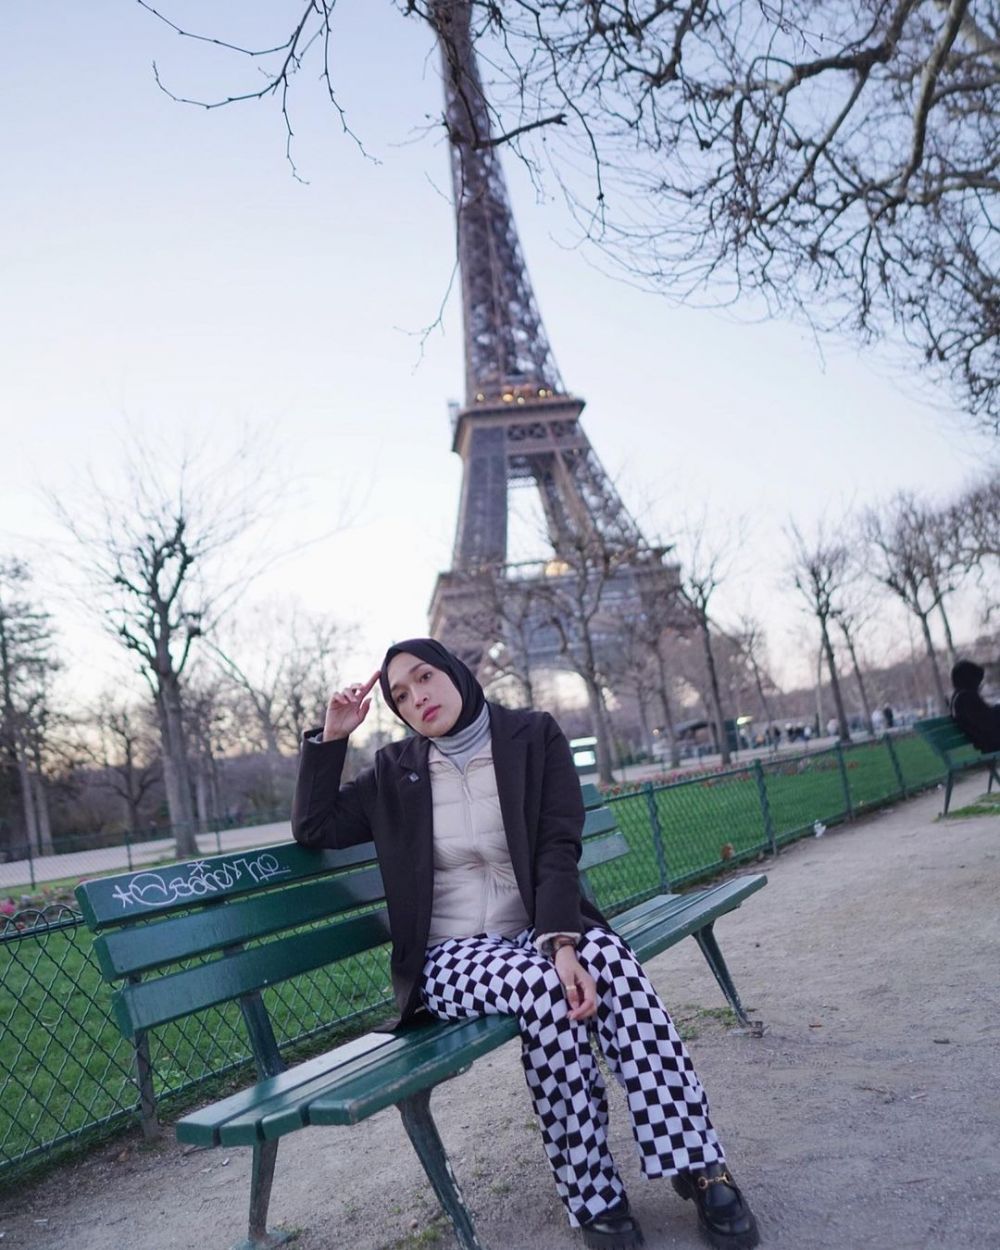 Ririe Fairus liburan ke Paris, ungkap kunci terwujudnya impian